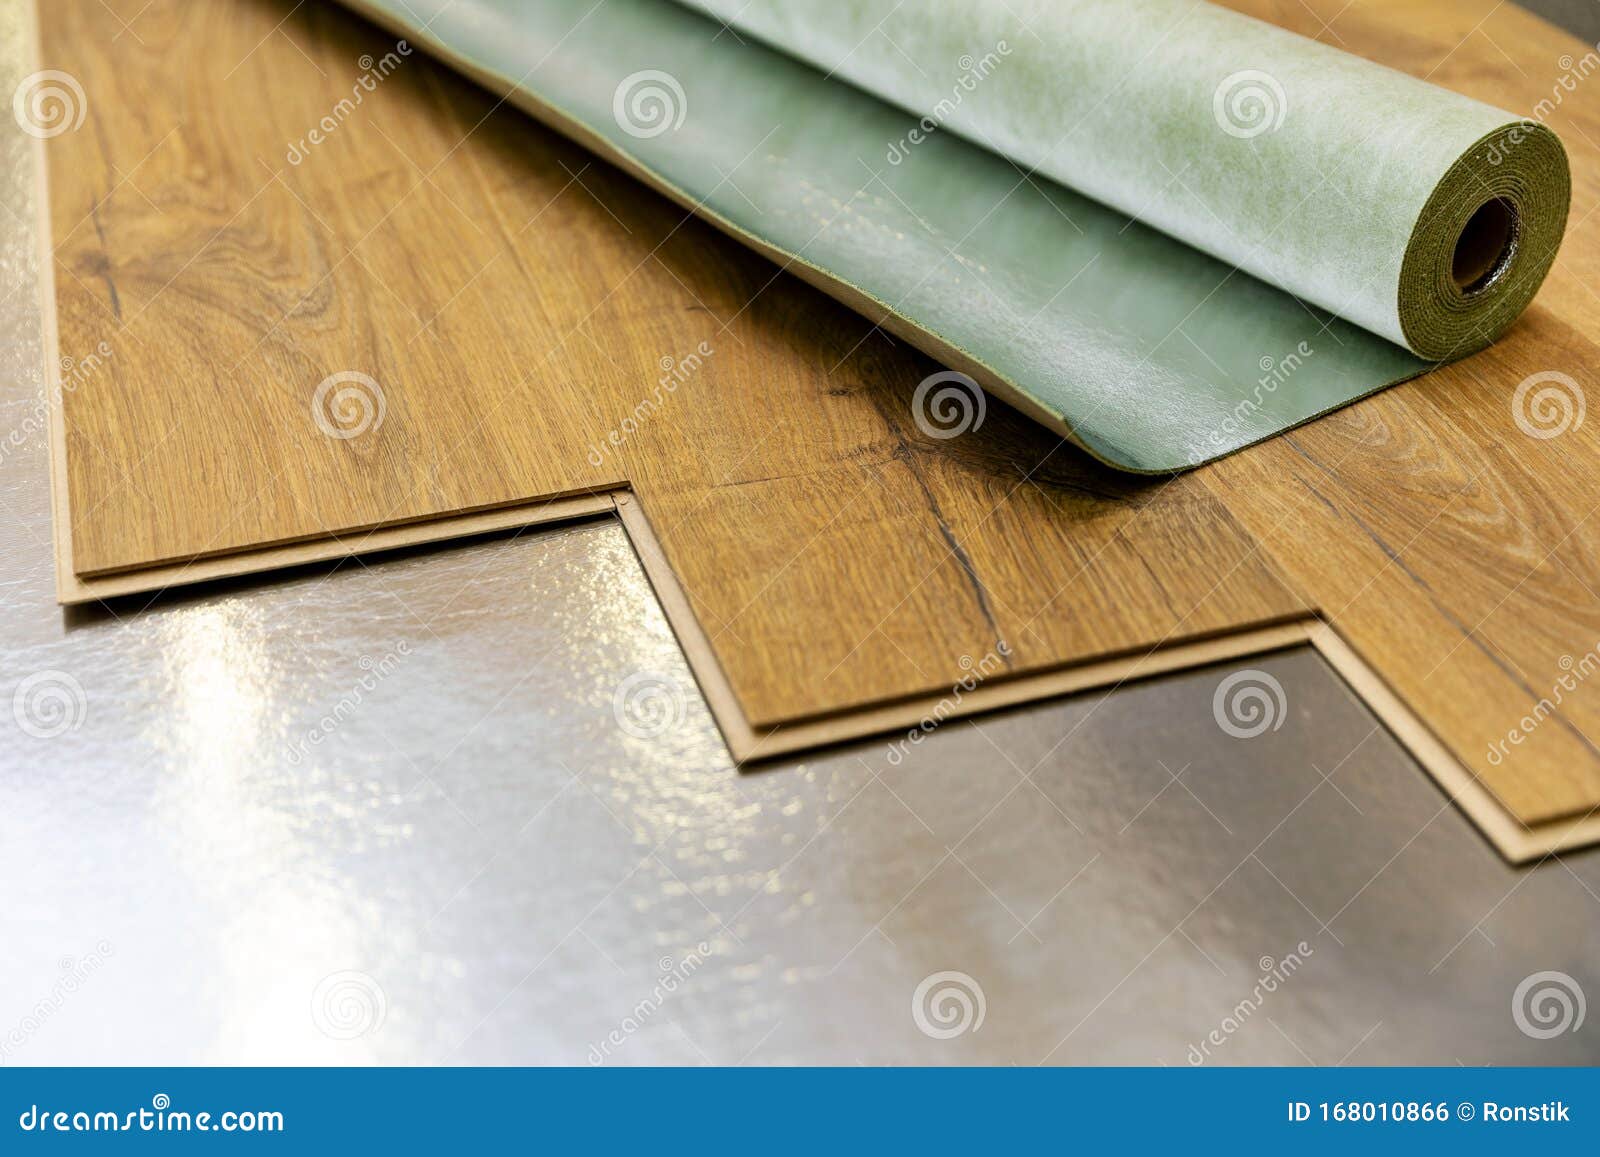 Laminate Floor Installation On Foil Underlay Stock Photo Image